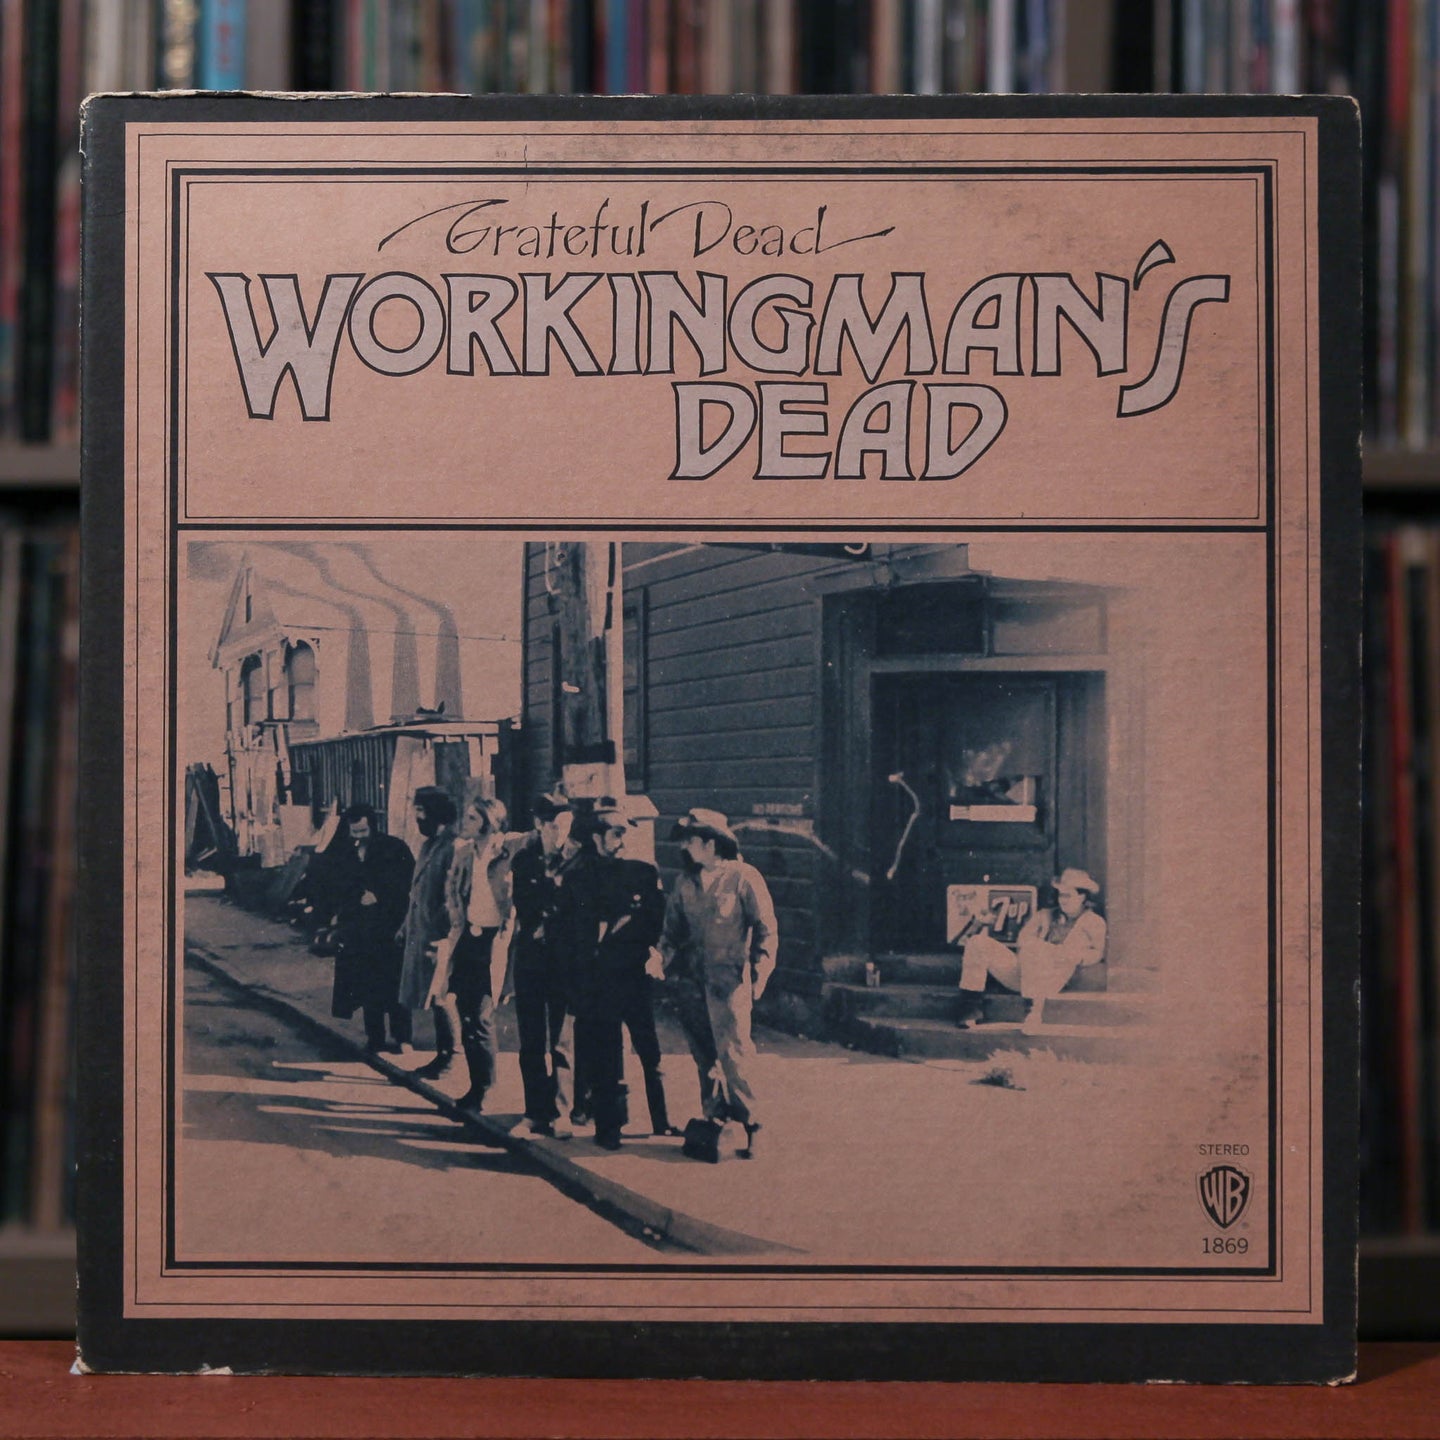 Grateful Dead - Workingman's Dead - 1970's Warner Bros, VG/VG